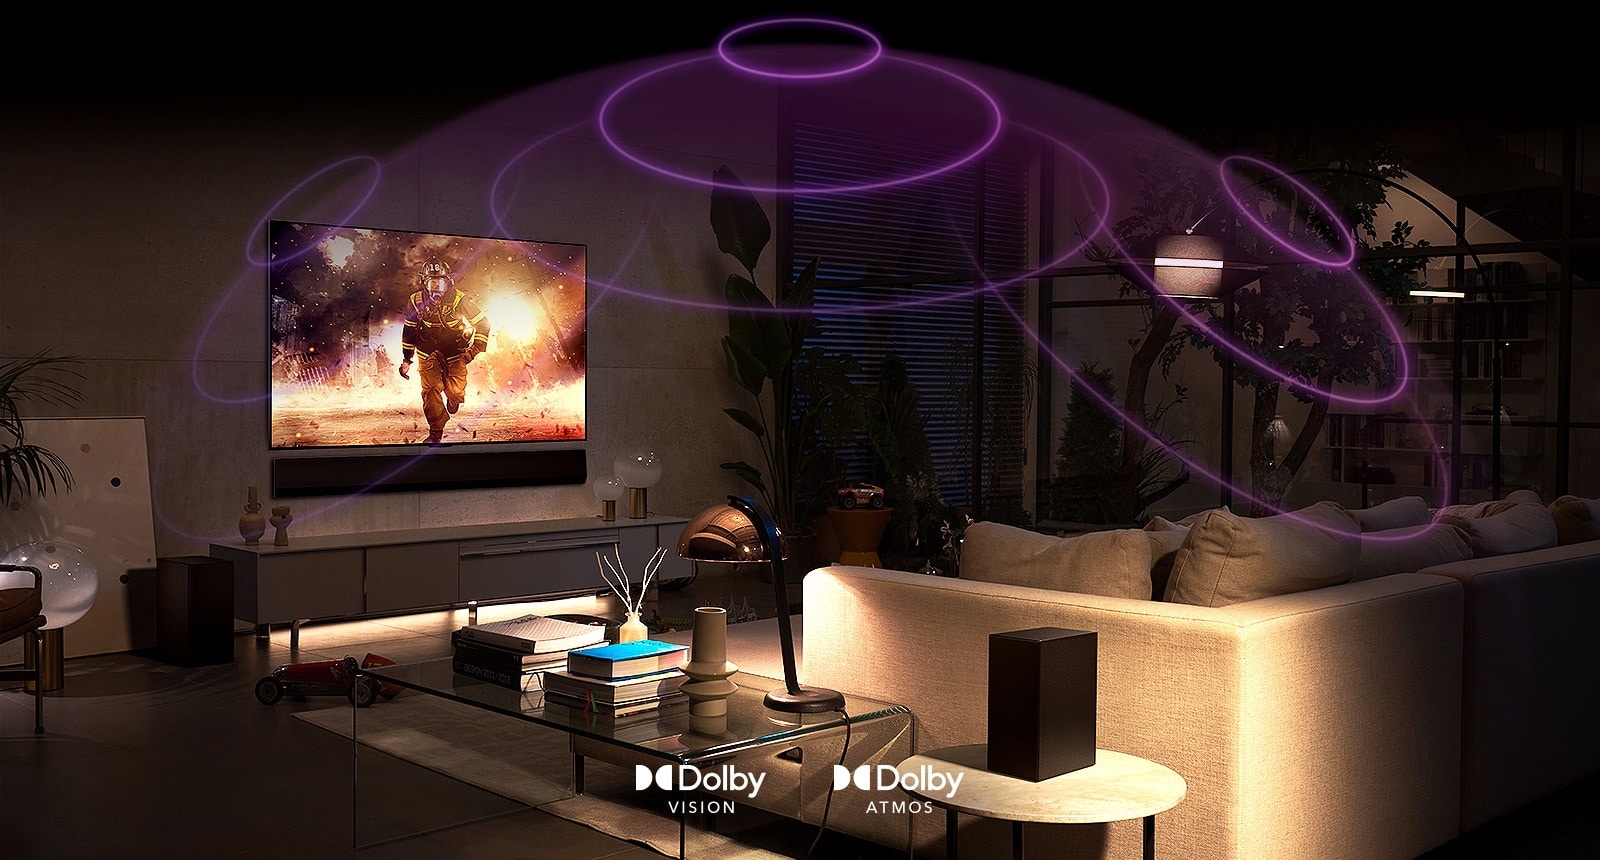 Slika LG OLED TV v sobi, kjer se predvaja akcijski film.  Zvočni valovi ustvarjajo kupolo med sedežno garnituro in televizijo ter ustvarjajo poglobljen prostorski zvok.